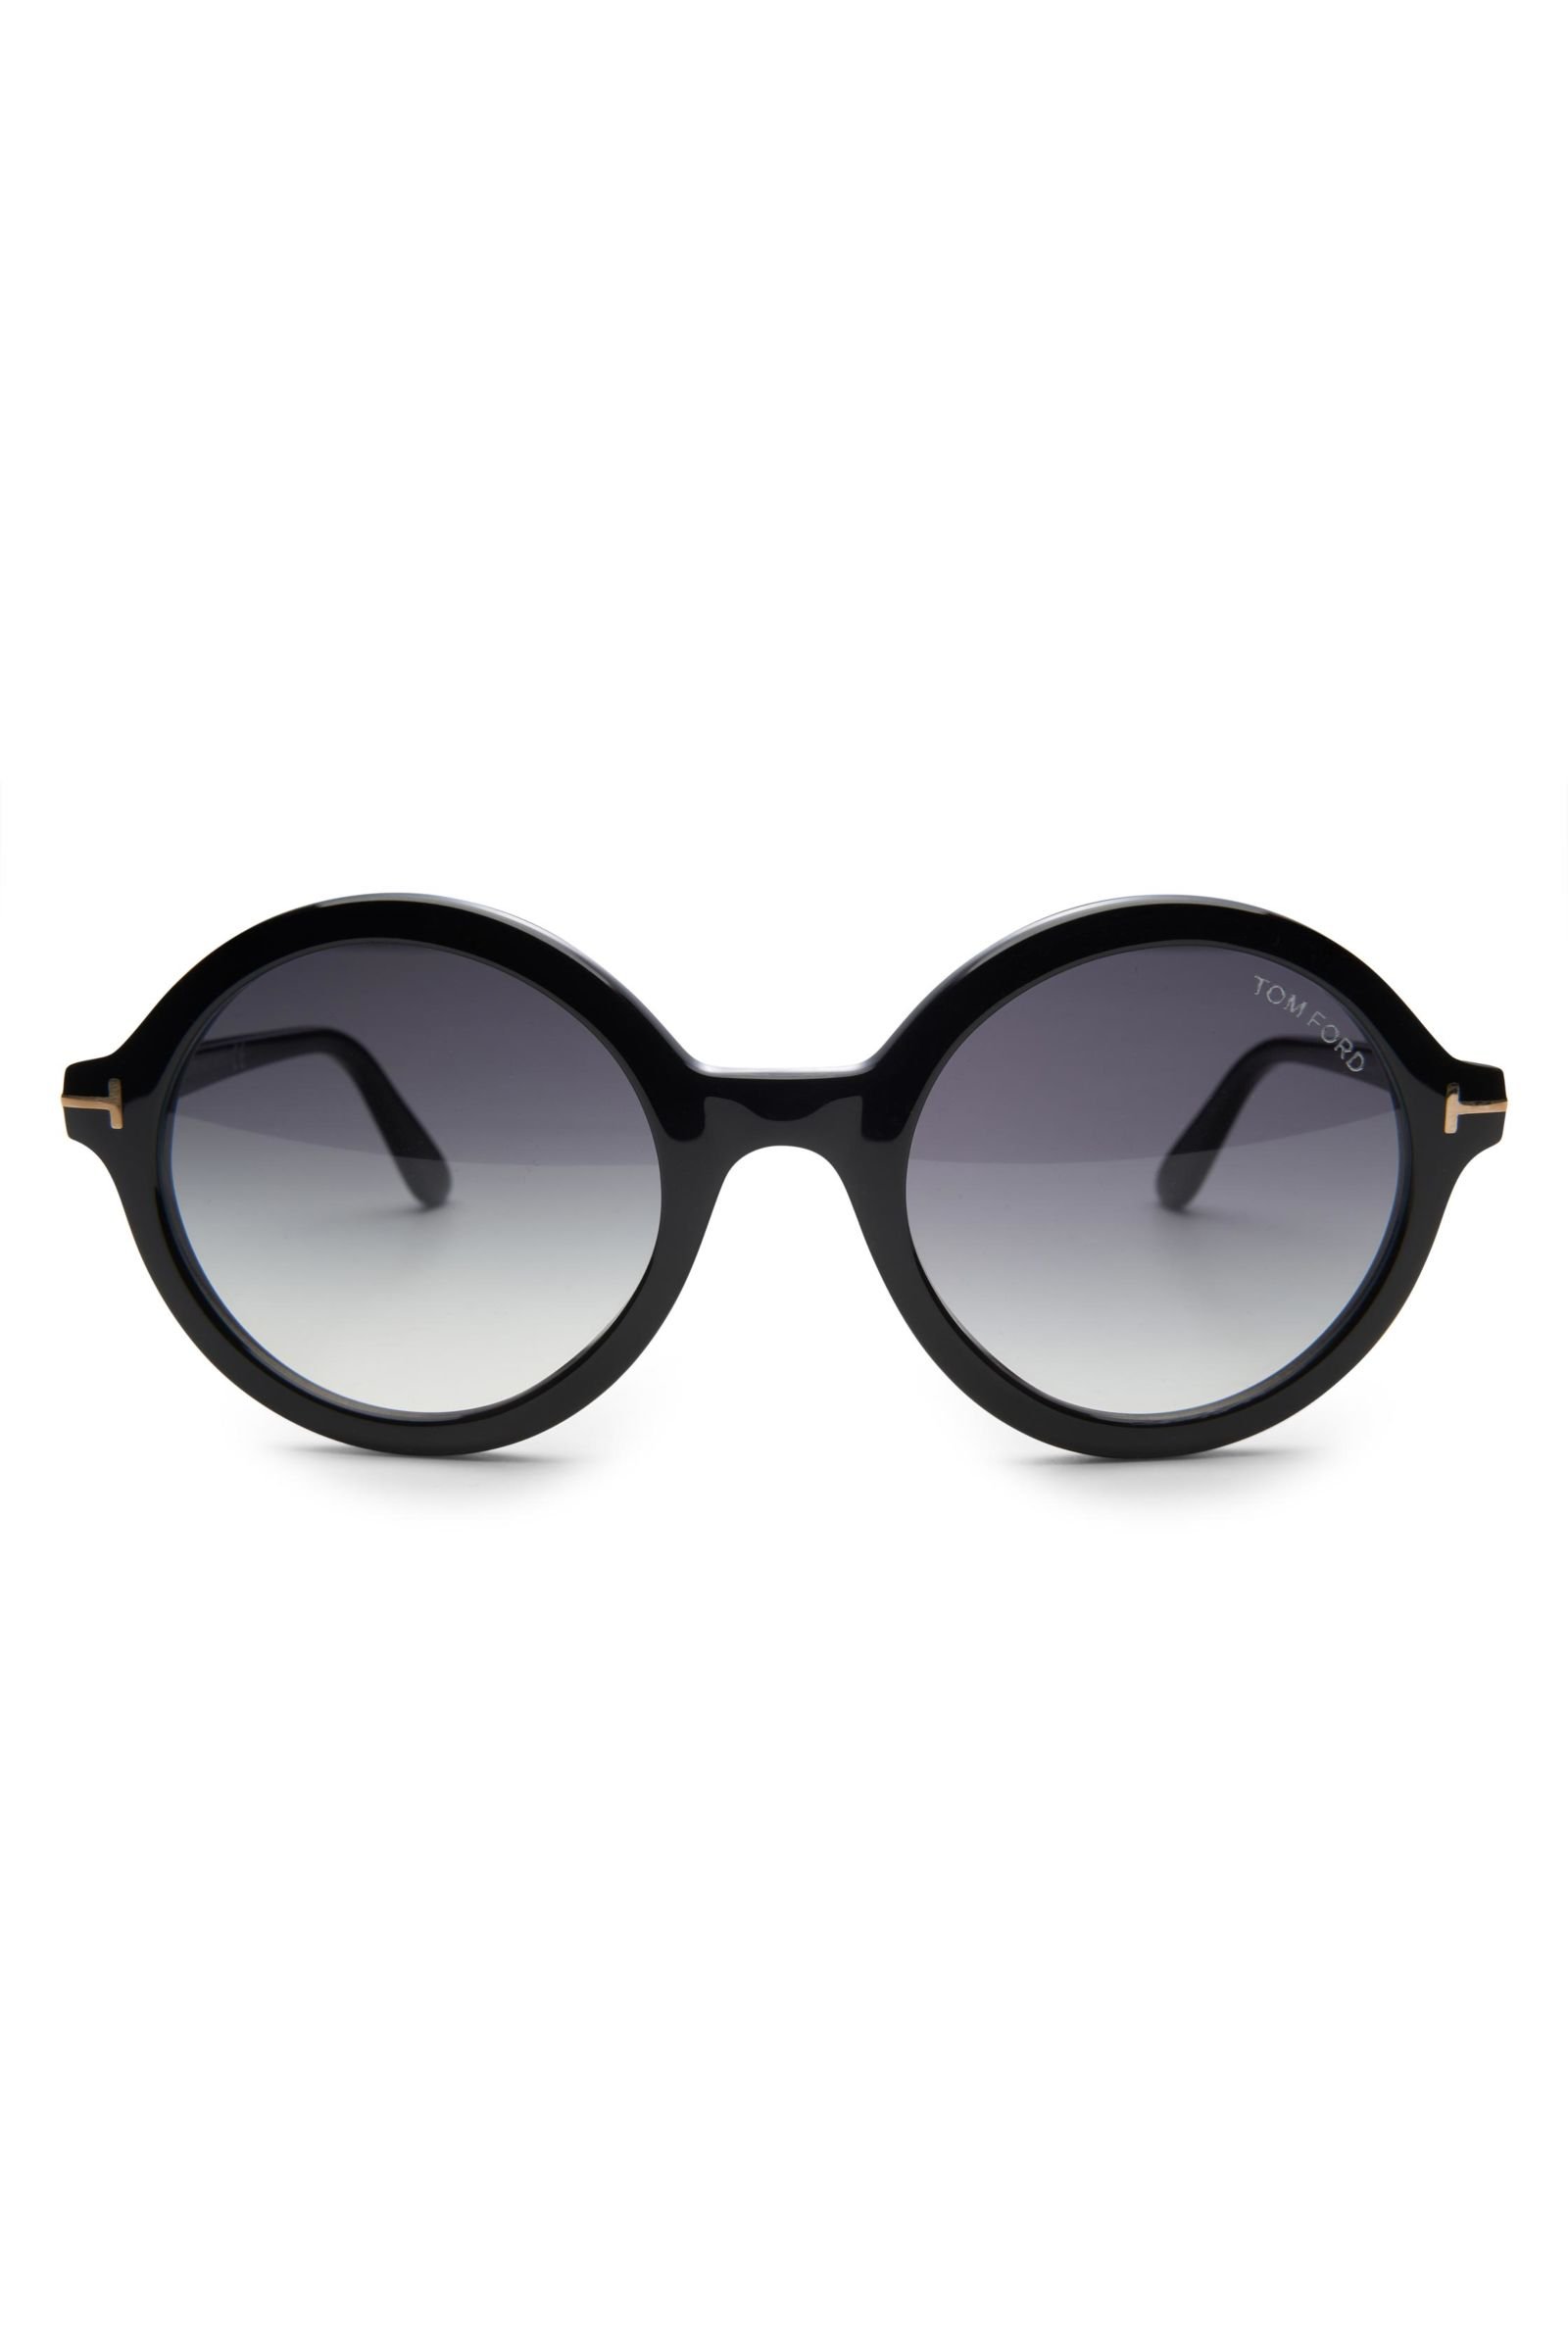 Sonnenbrille 'Nicolette' schwarz/grau